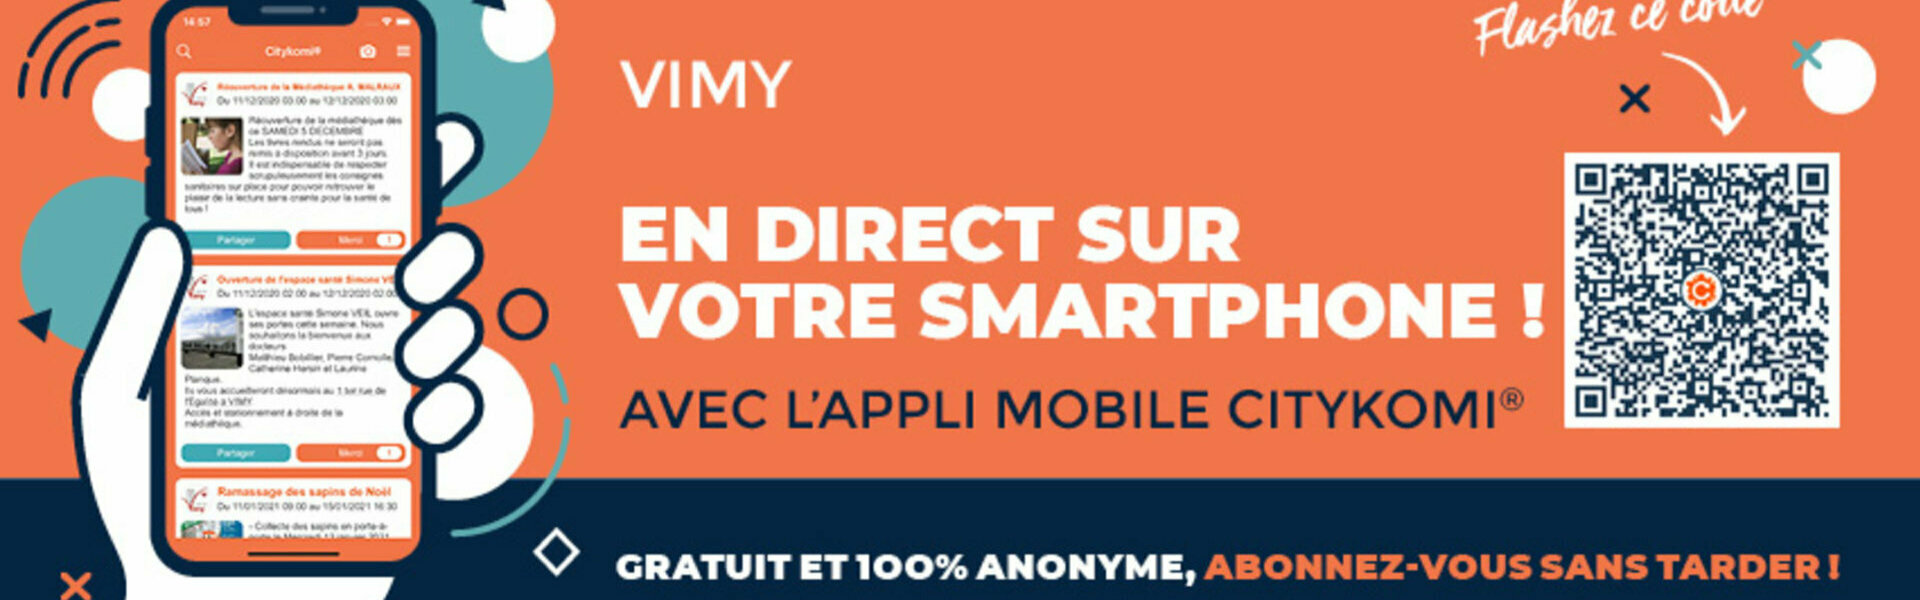 Ville de Vimy - Site officiel